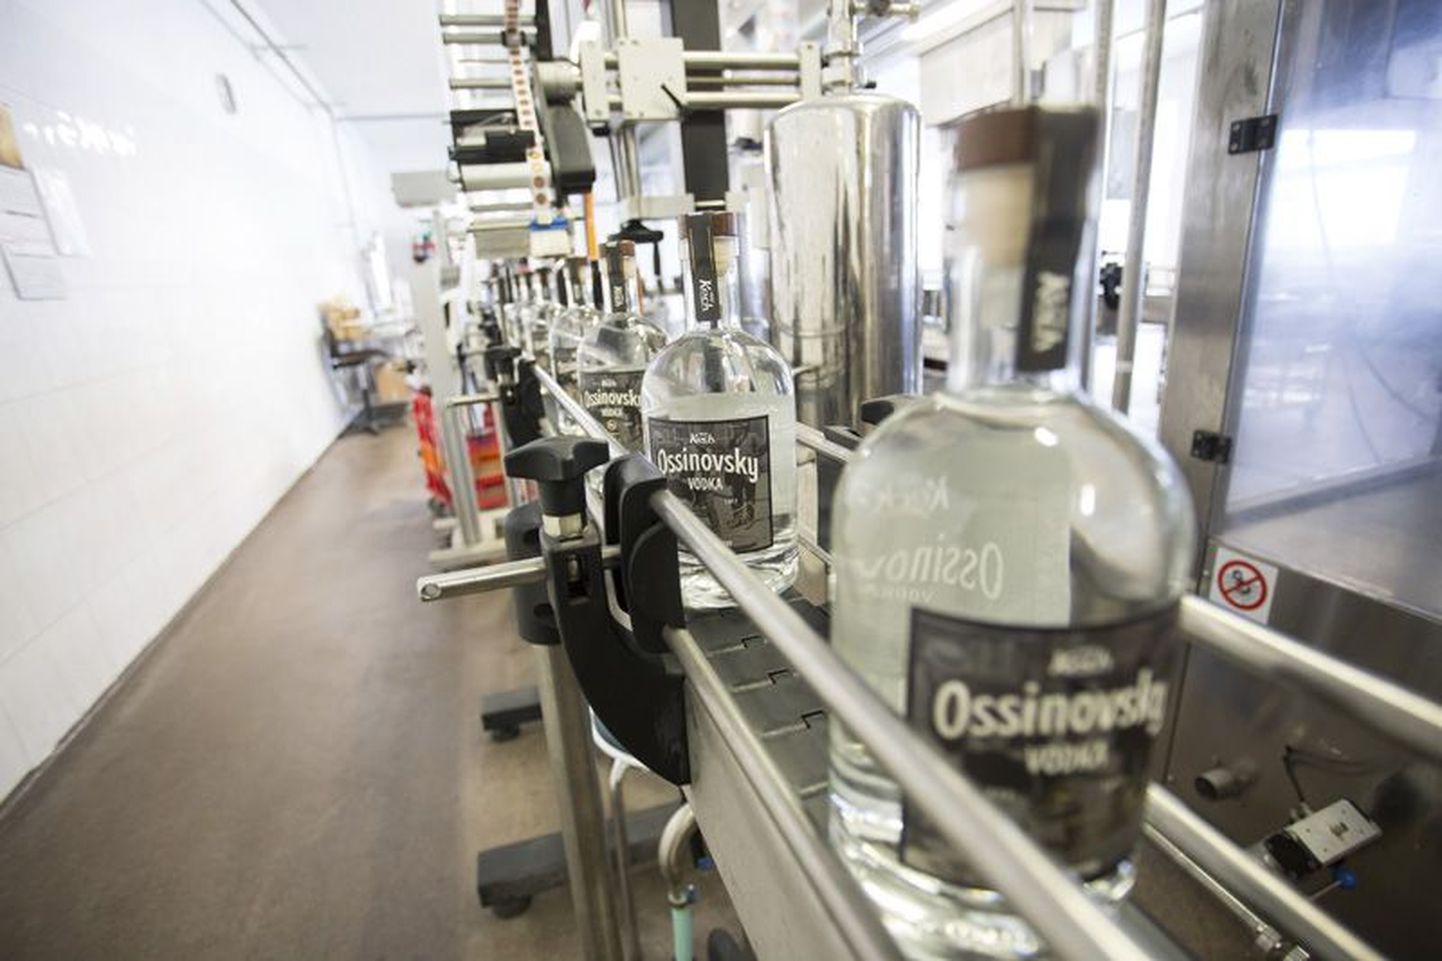 Ossinovsky Vodka jõudis eile tootmisse.